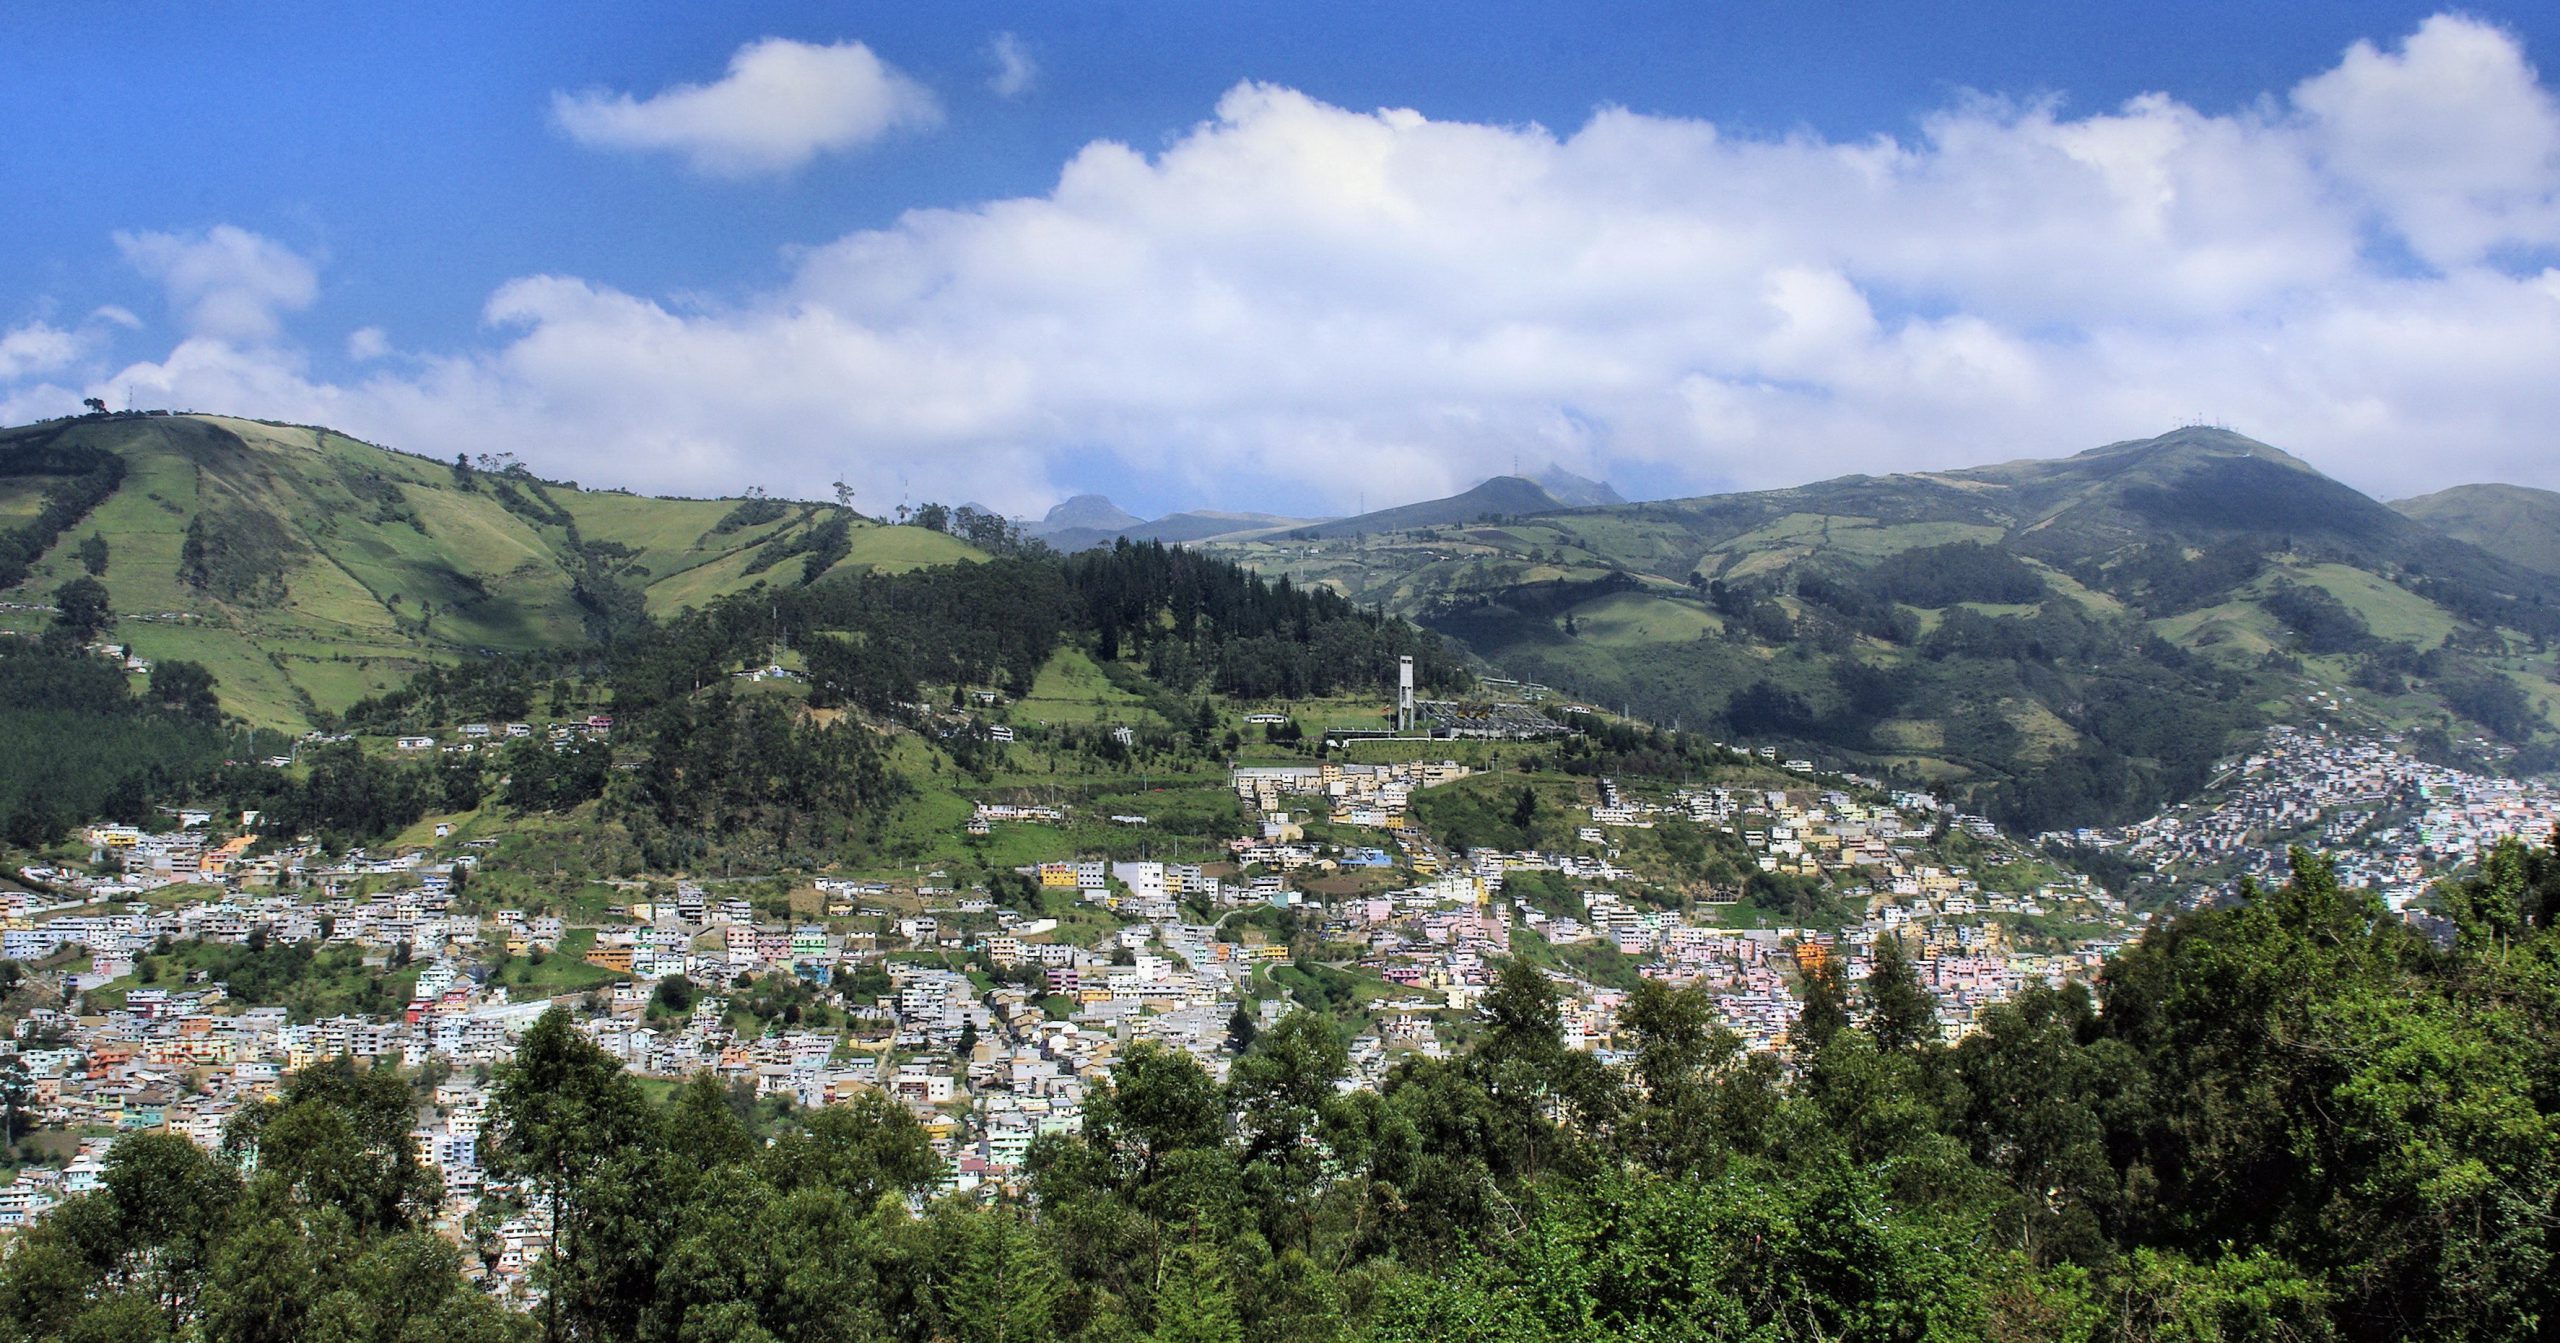 Équateur : une prochaine destination du PVT